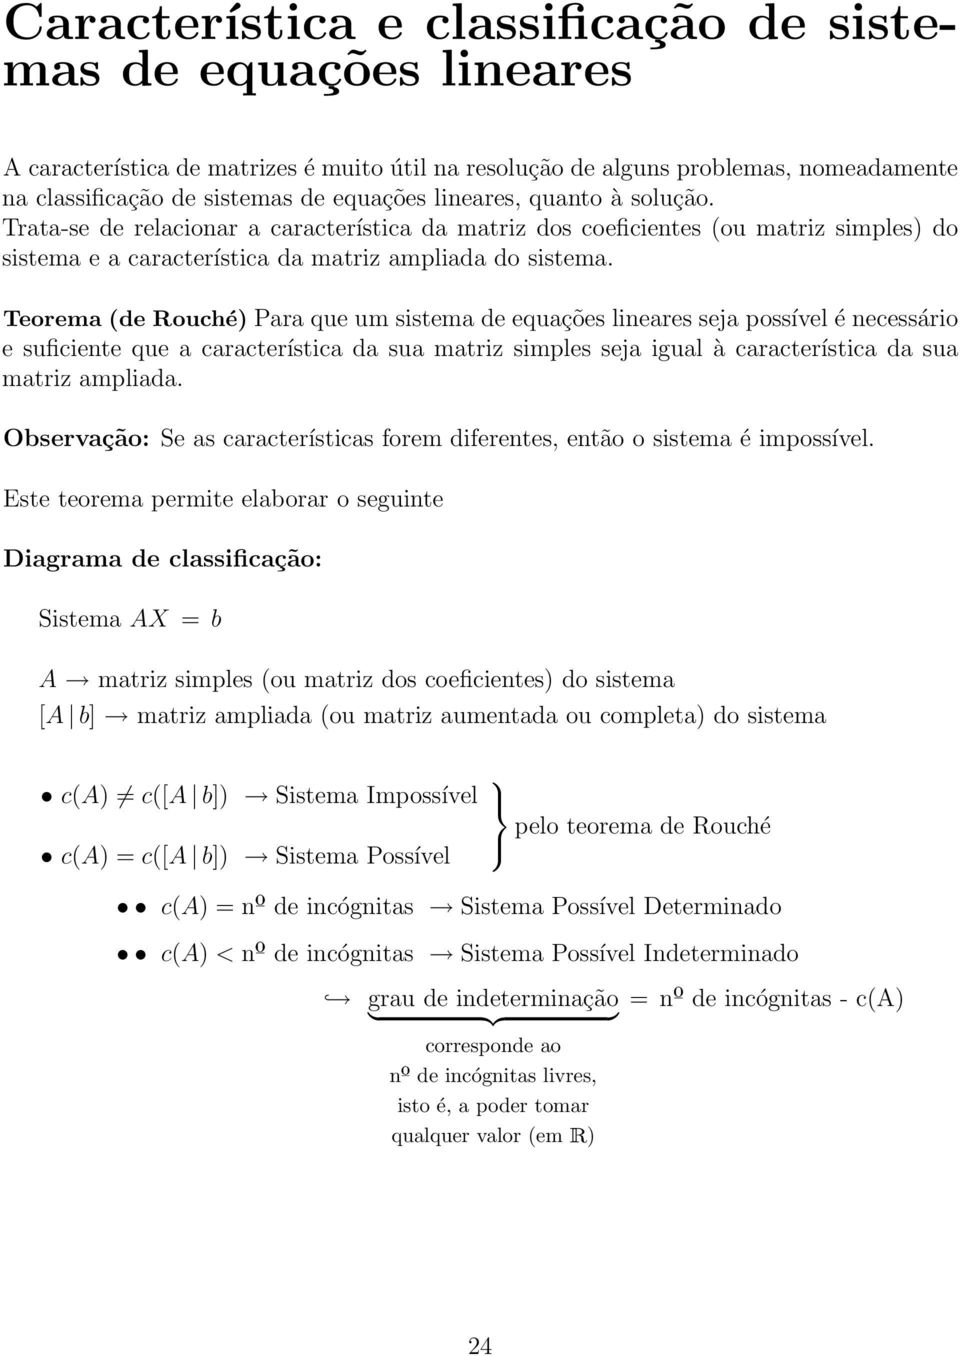 Teorema (de Rouché) Para que um sistema de equações lineares seja possível é necessário e suficiente que a característica da sua matriz simples seja igual à característica da sua matriz ampliada.